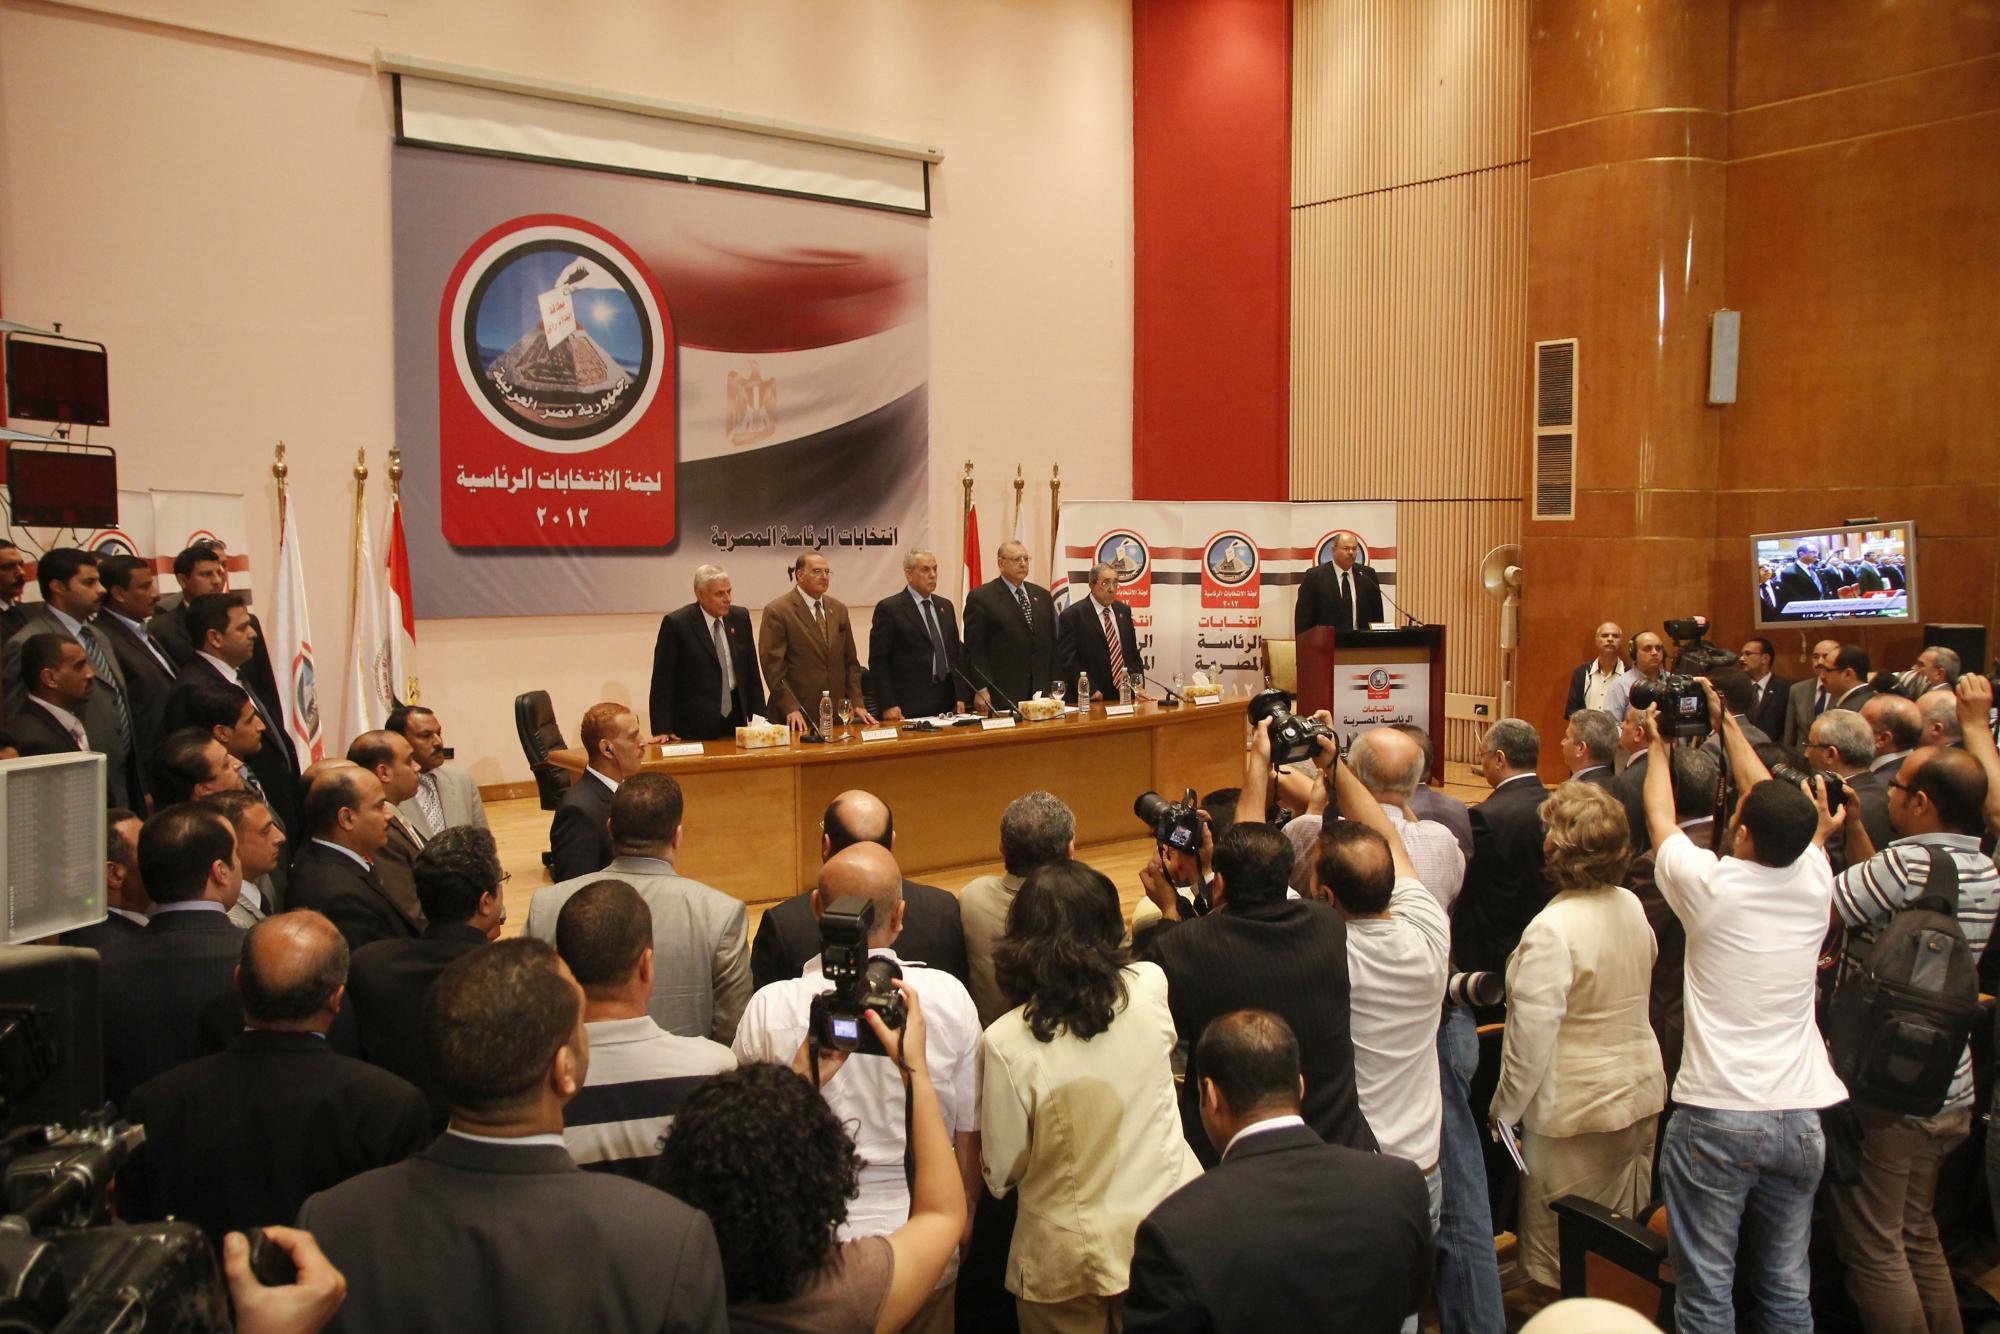 穆尔西当选埃及总统沙菲克认输 新政府将激烈“争权”